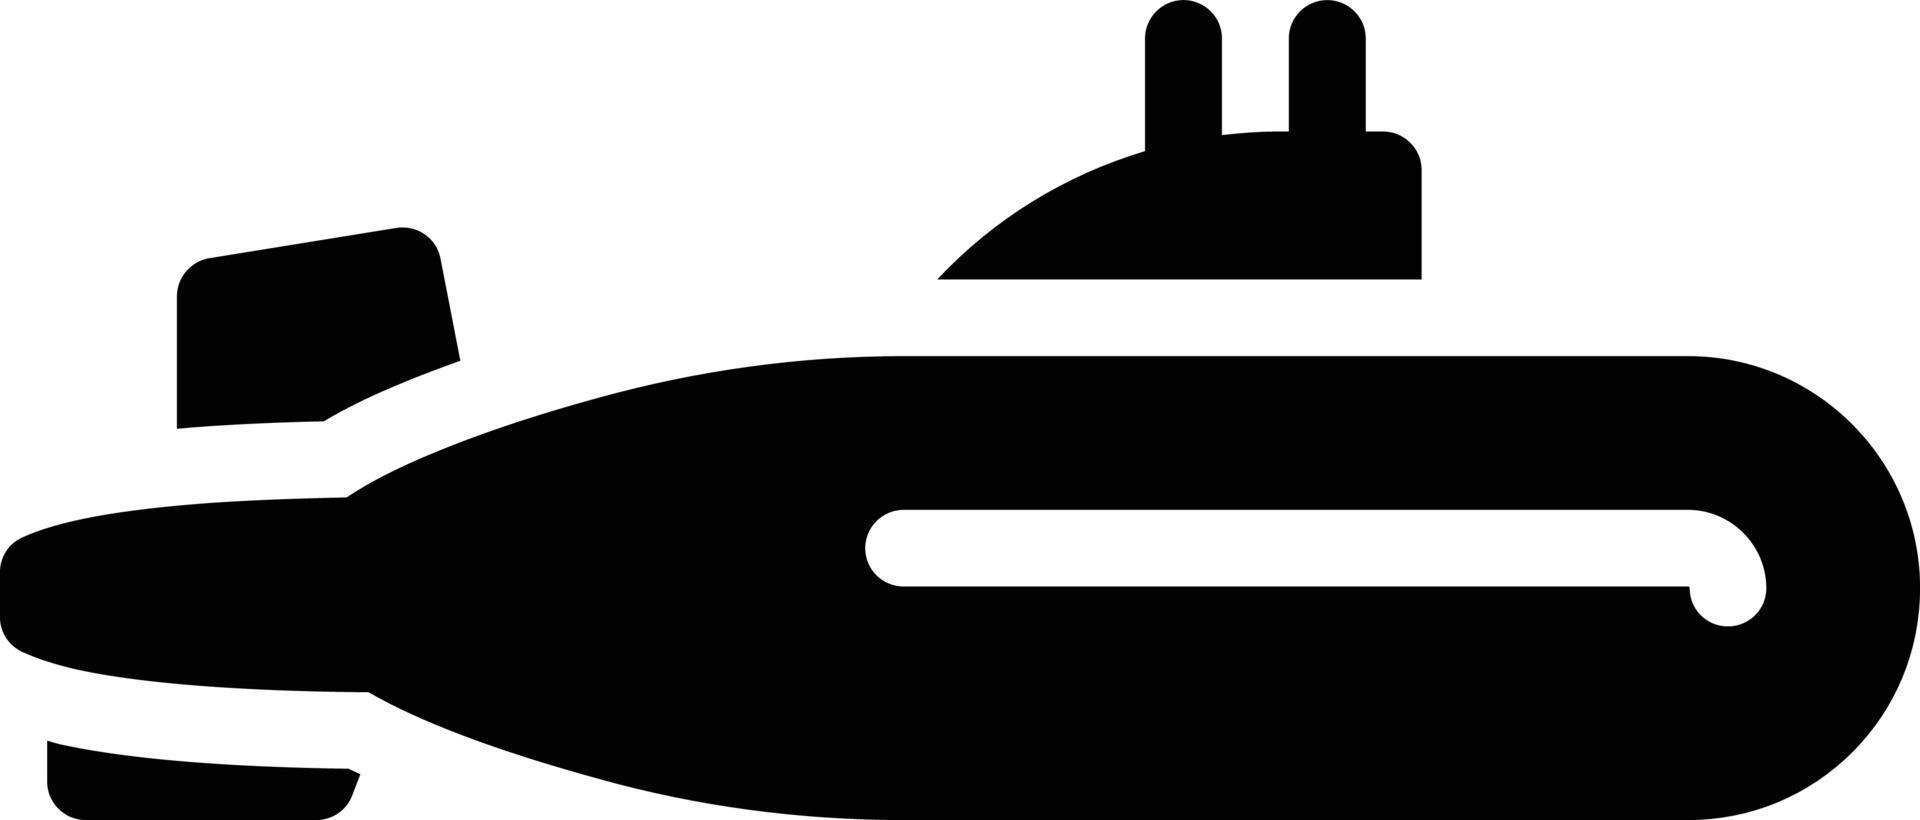 onderzeeër vectorillustratie op een achtergrond. premium kwaliteit symbolen. vectorpictogrammen voor concept of grafisch ontwerp vector